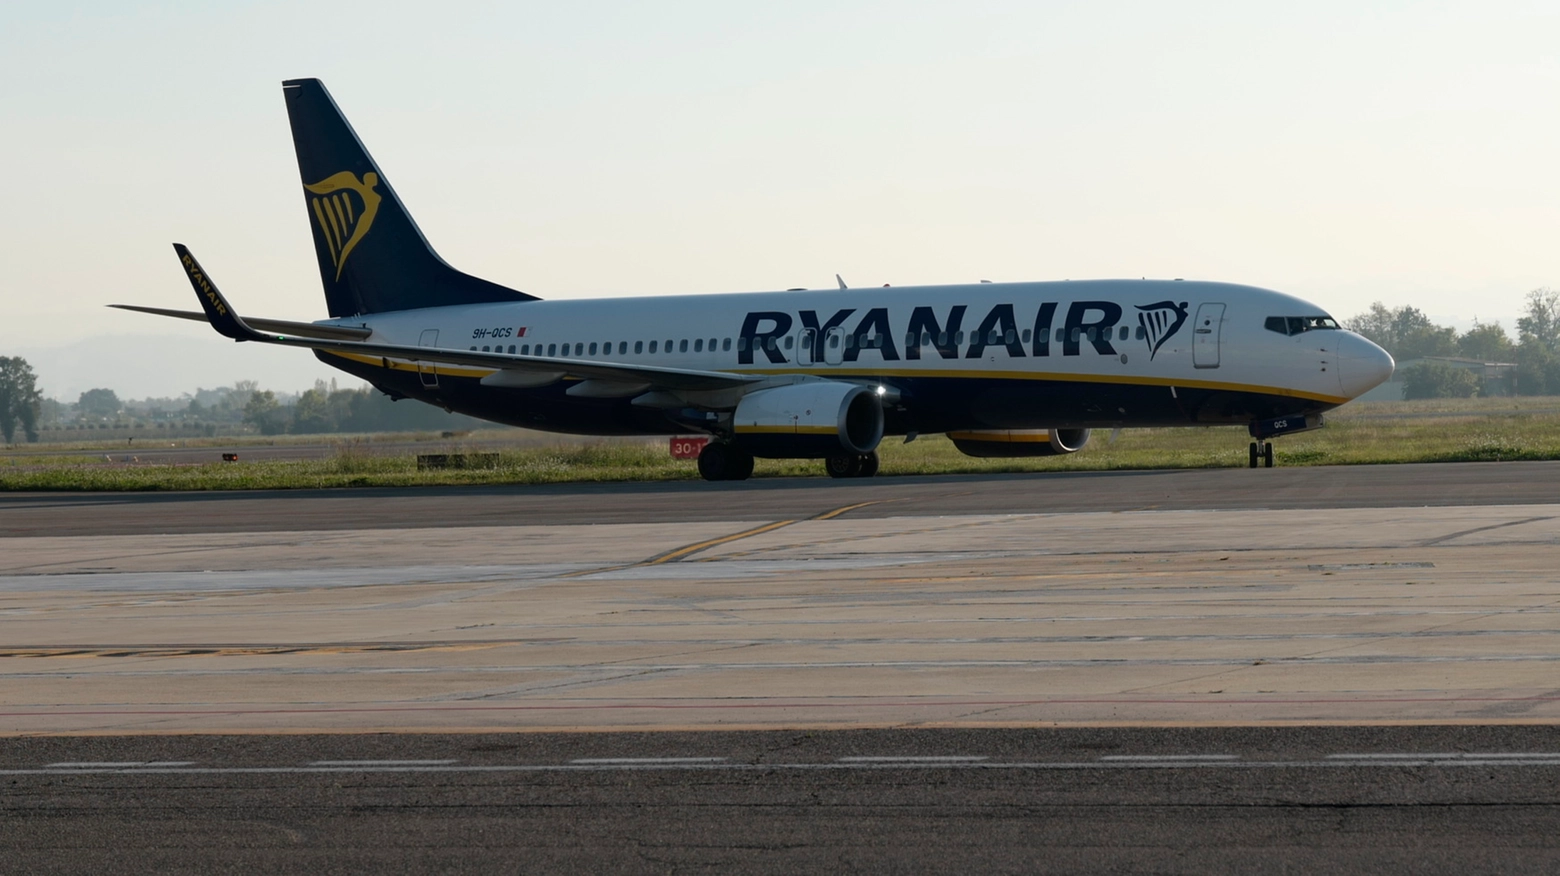 Il pilota dell’aereo Ryanair ha invertito la rotta, tornando allo scalo di Caselle, da dove era decollato. A niente sono serviti i tentativi di rianimazione in pista. Sotto choc la moglie del giovane, che si è sentita male ed è stata trasportata in ospedale